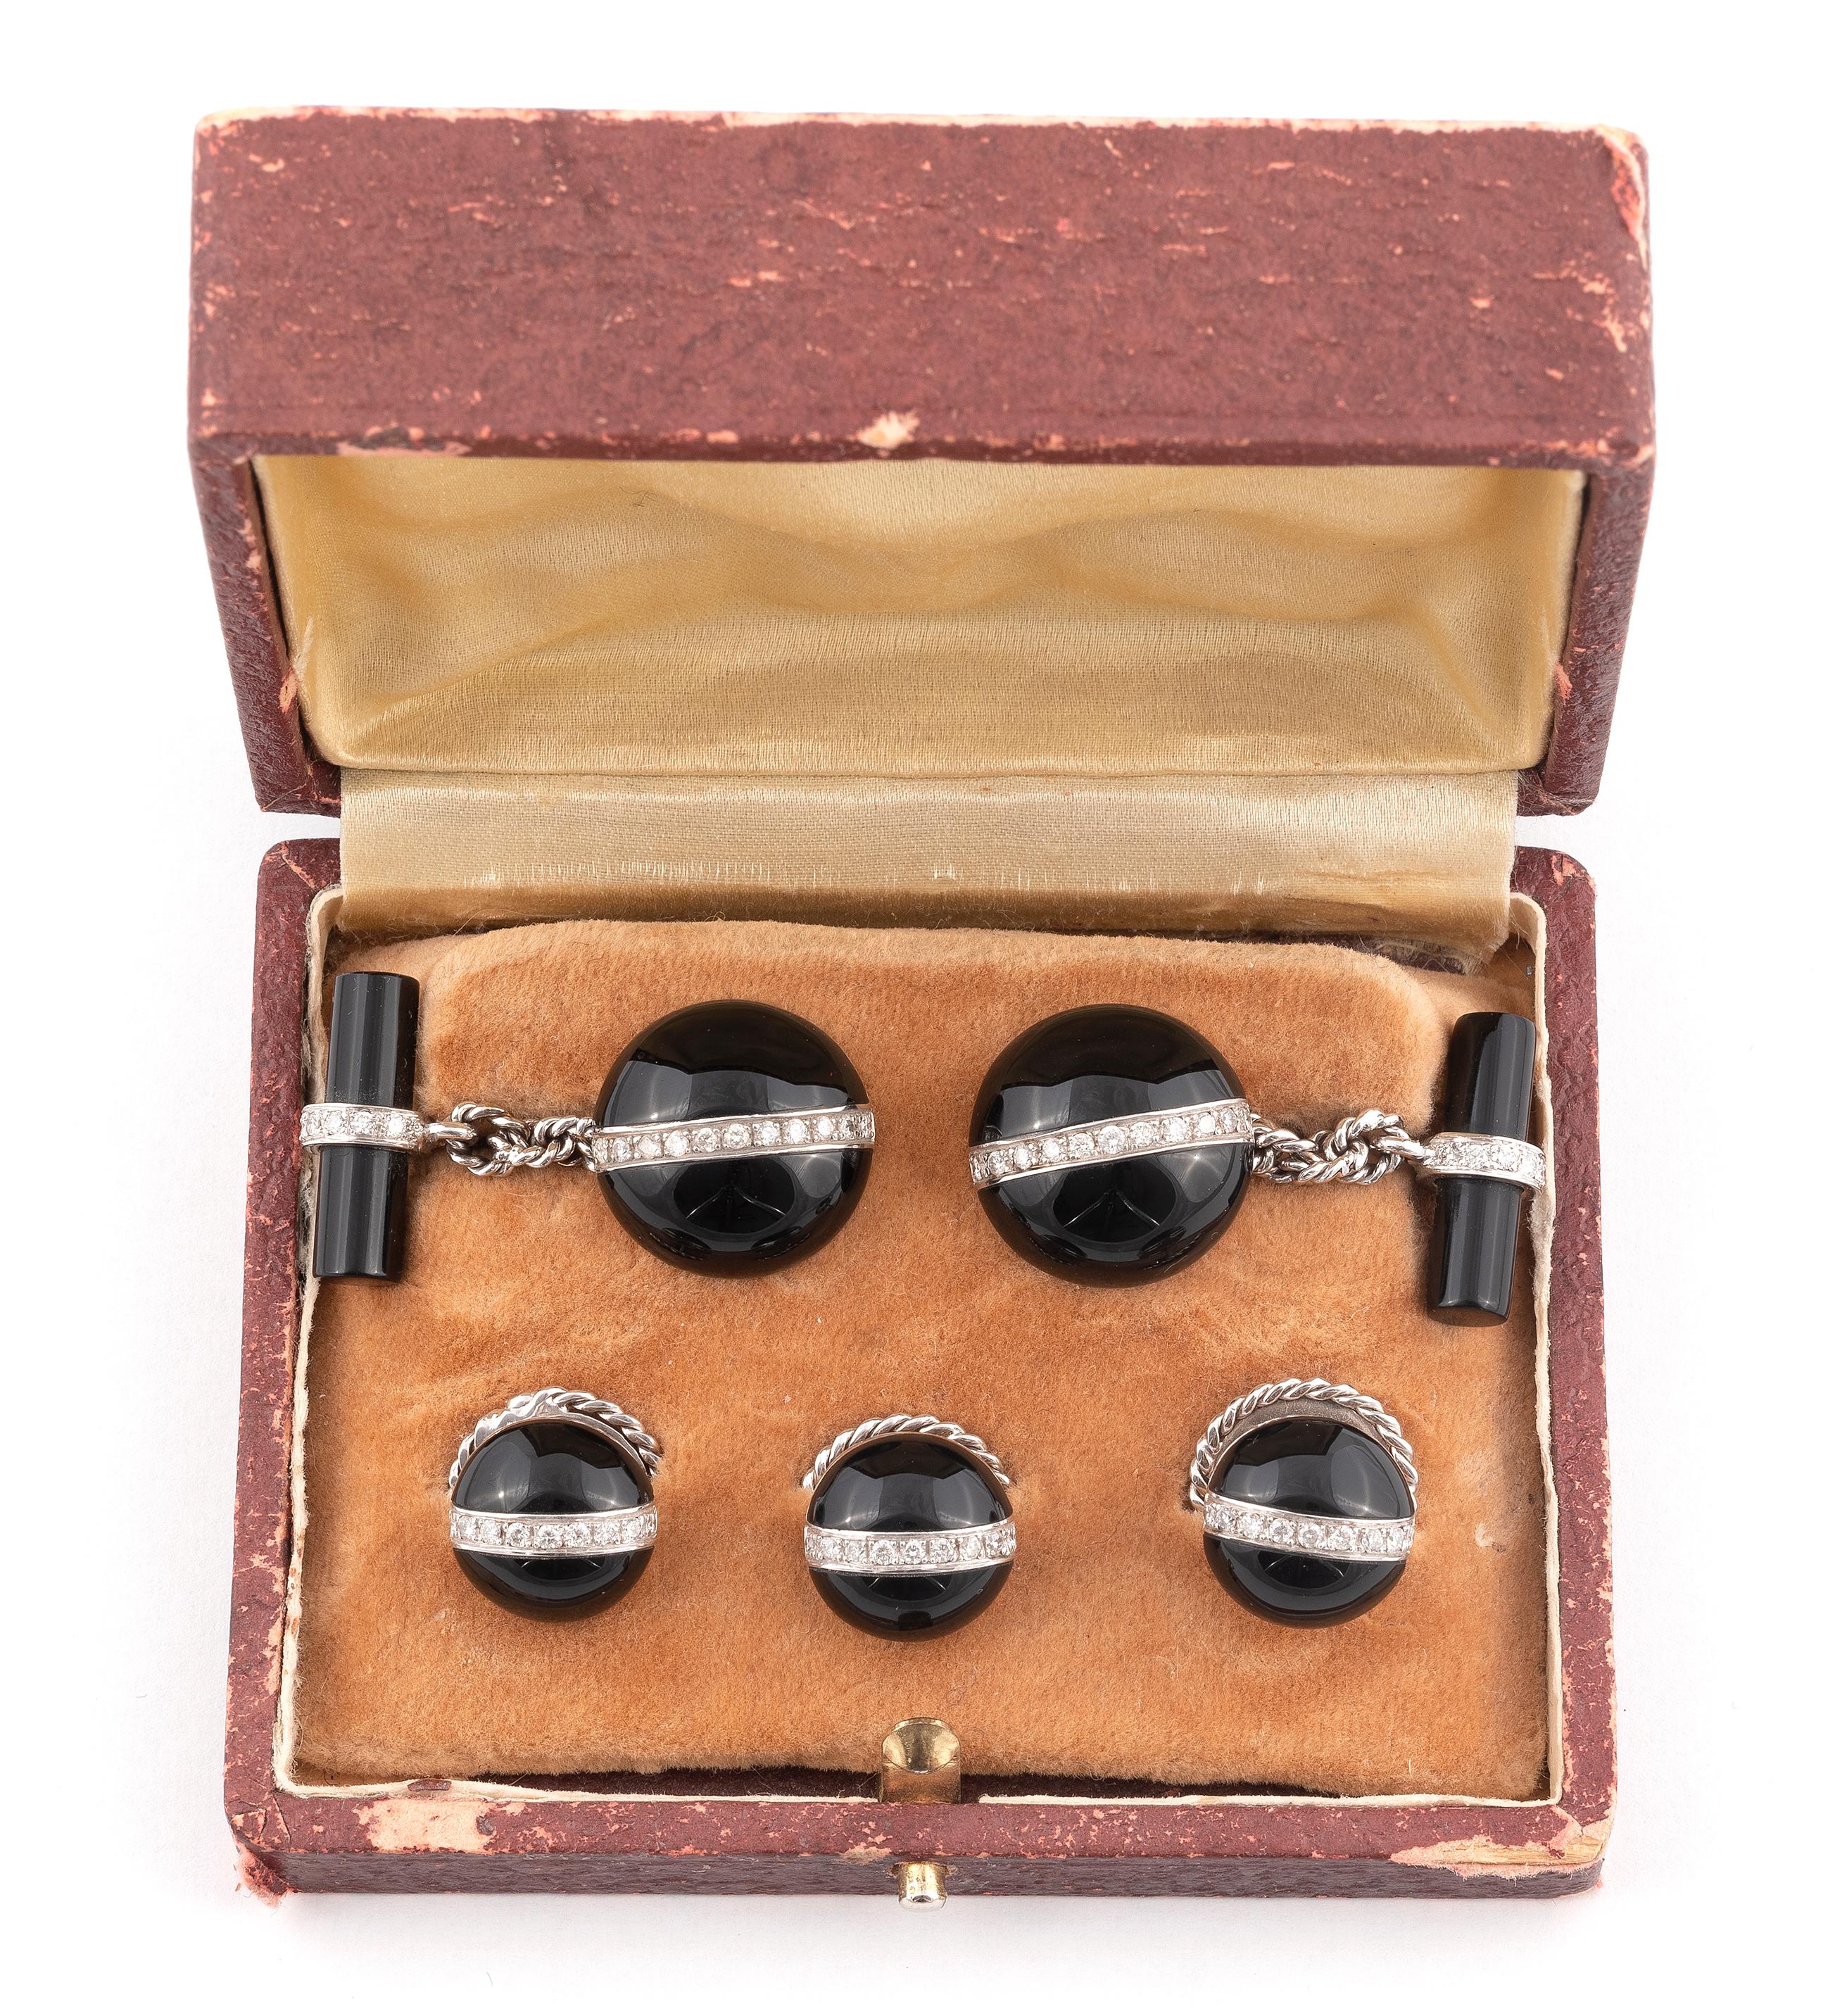 
Chaque bouton de manchette est de forme circulaire avec une ligne centrale en diamant, trois boutons en suite, circa 1950, dans un étui en filt beige.